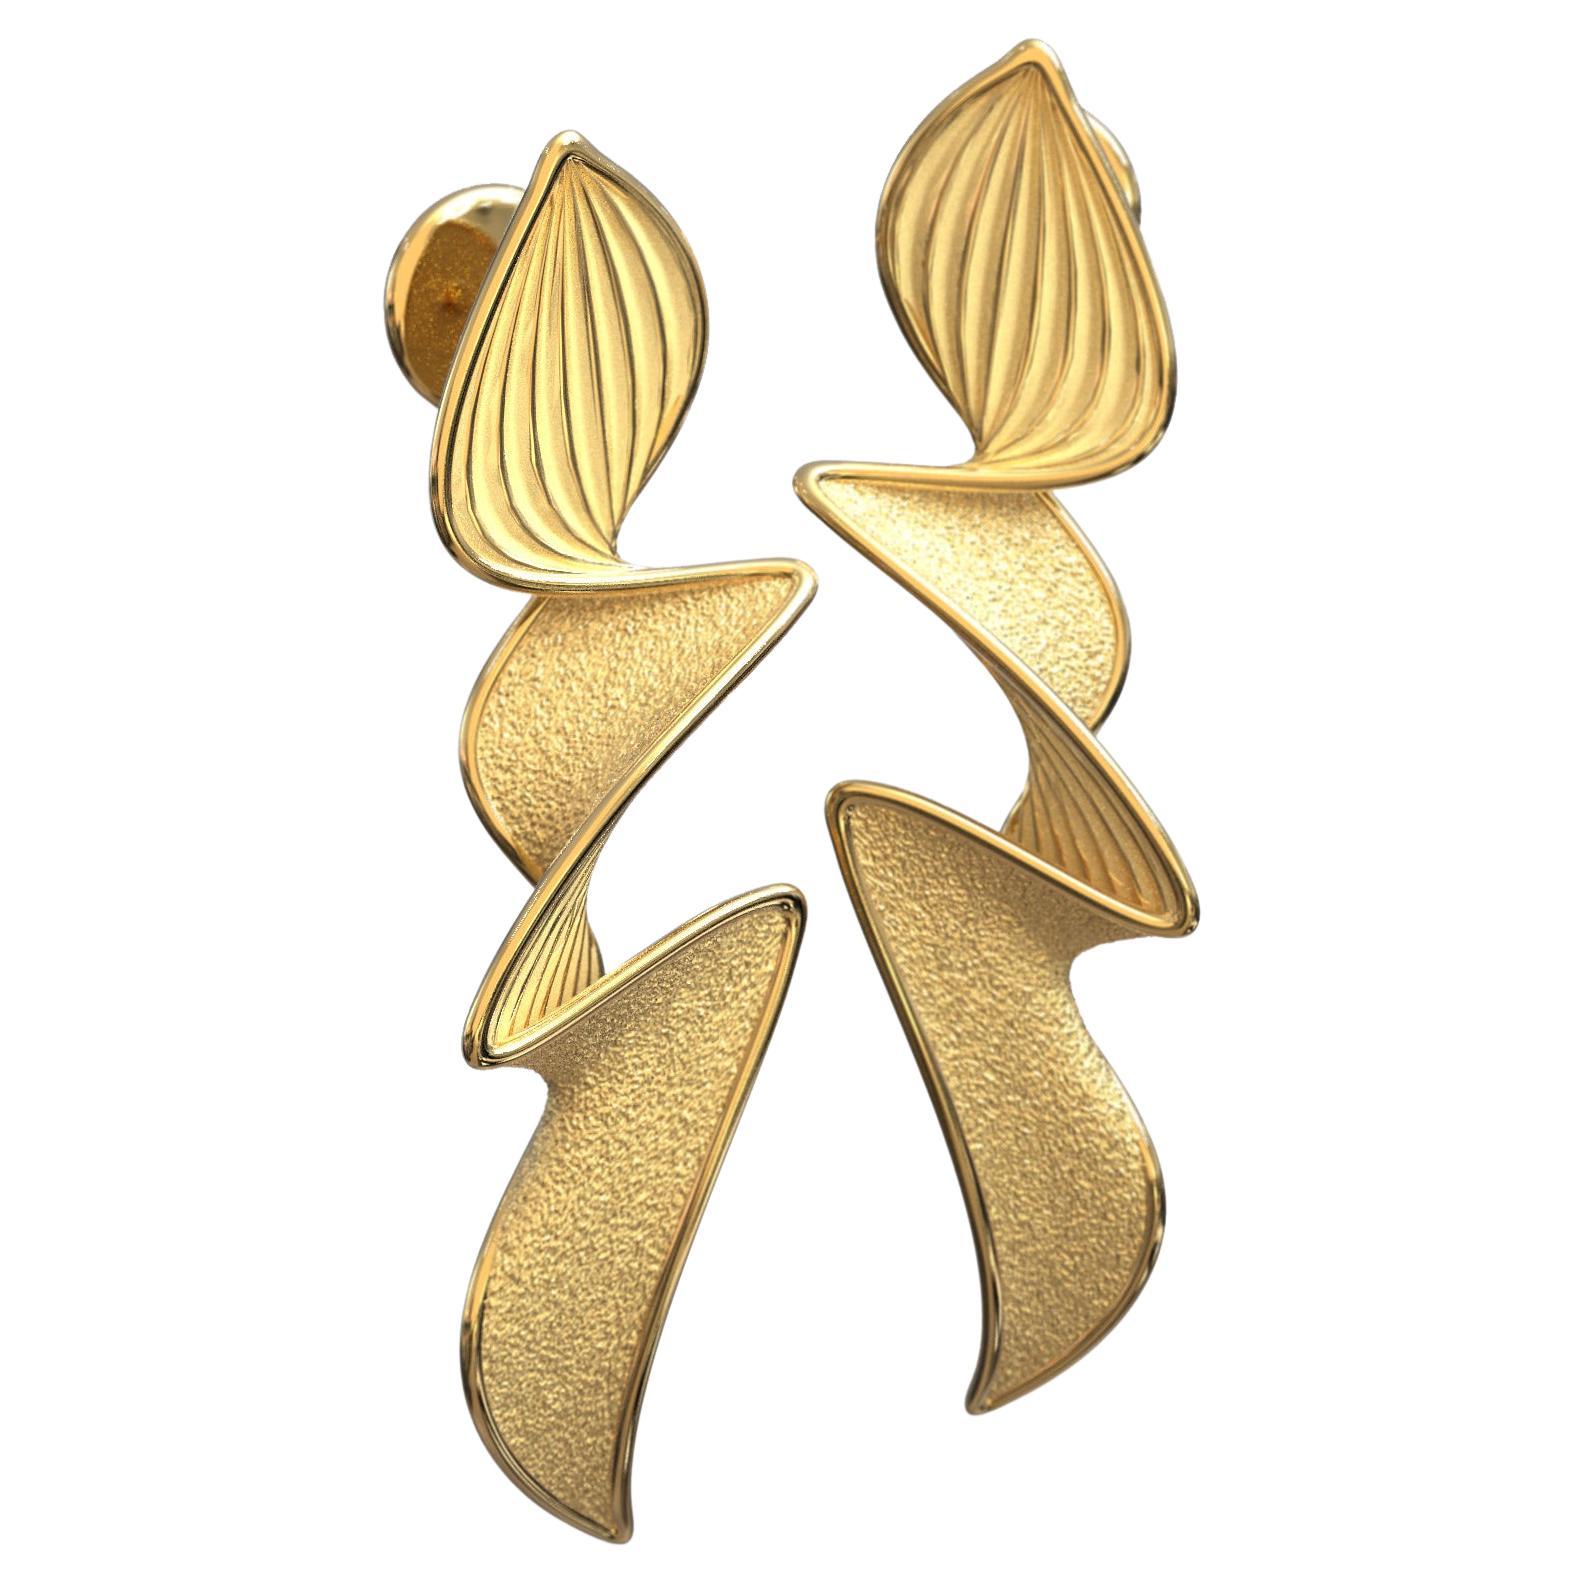 Statement Earrings in 18k by Oltremare Gioielli, Italian Fine Jewelry